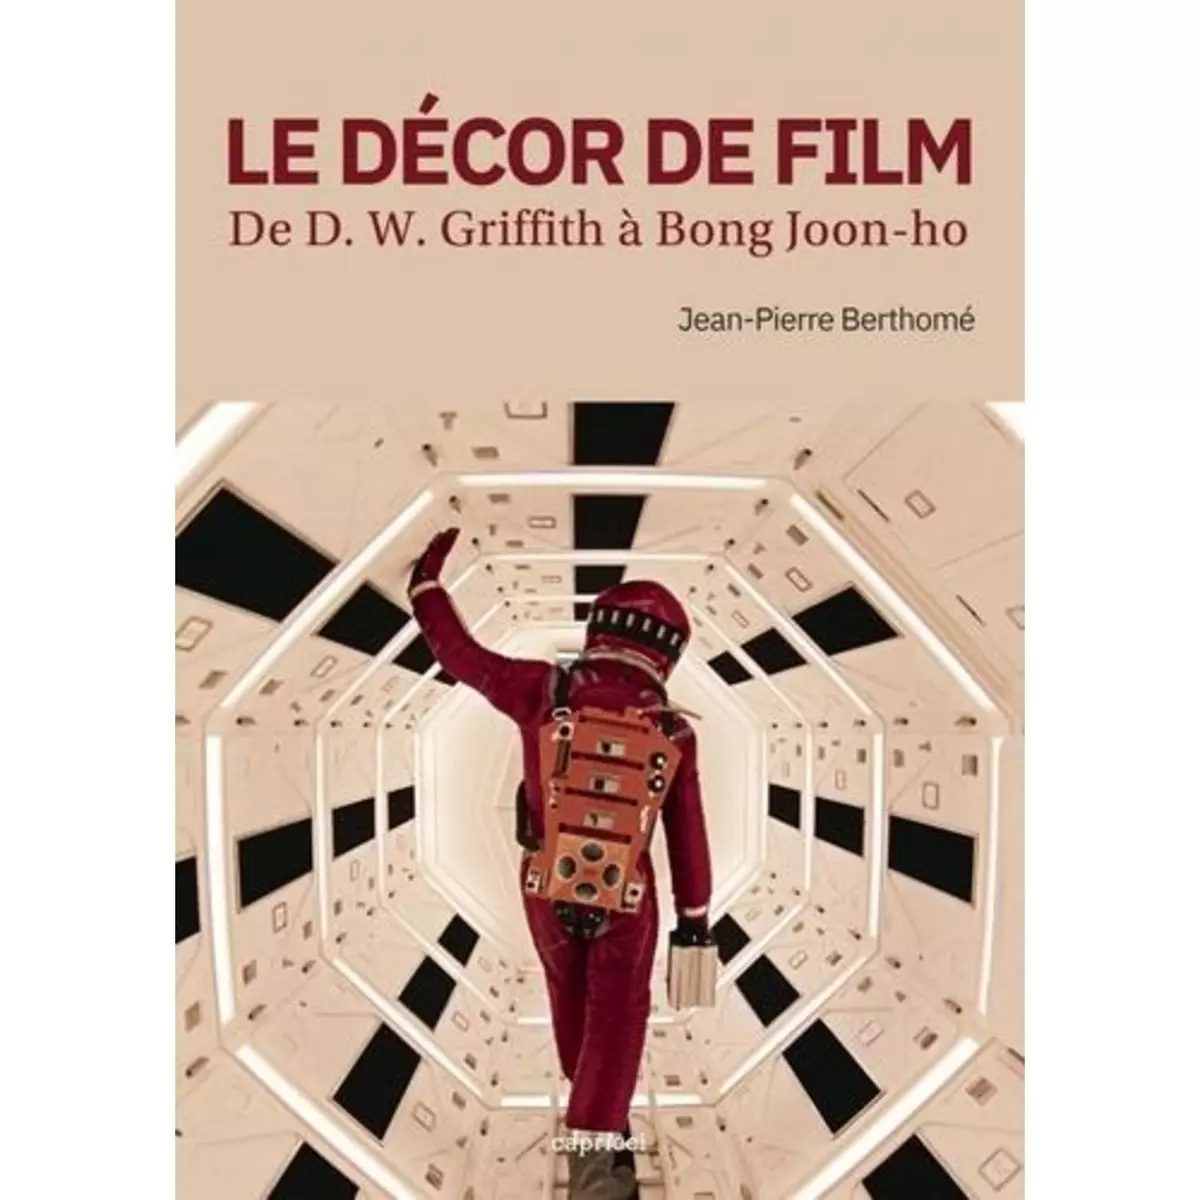  LE DECOR DE FILM. DE D. W. GRIFFITH A BONG JOON-HO, Berthomé Jean-Pierre